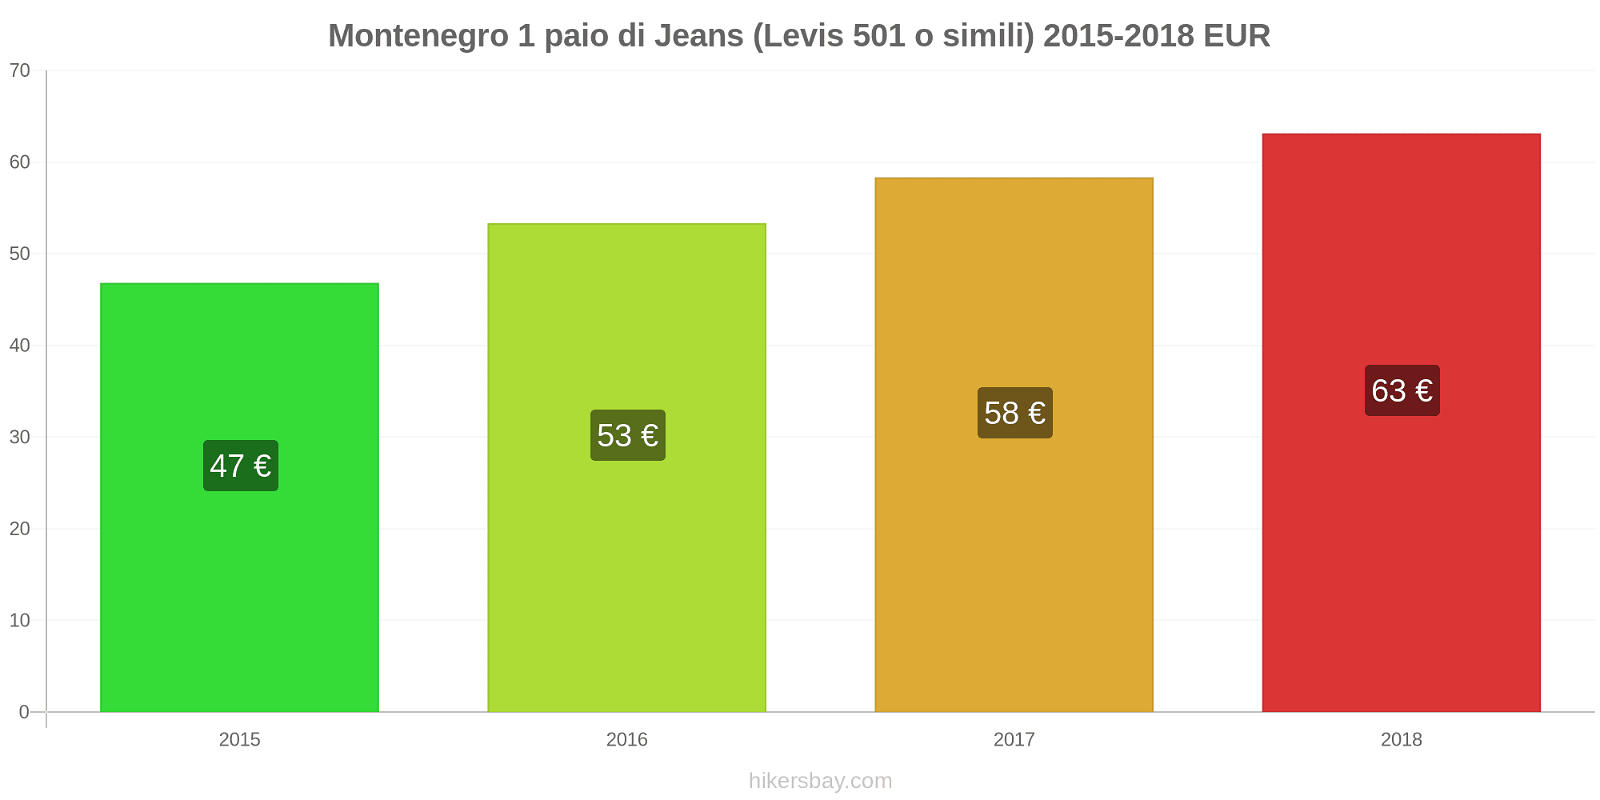 Montenegro cambi di prezzo 1 paio di jeans (Levis 501 o simili) hikersbay.com